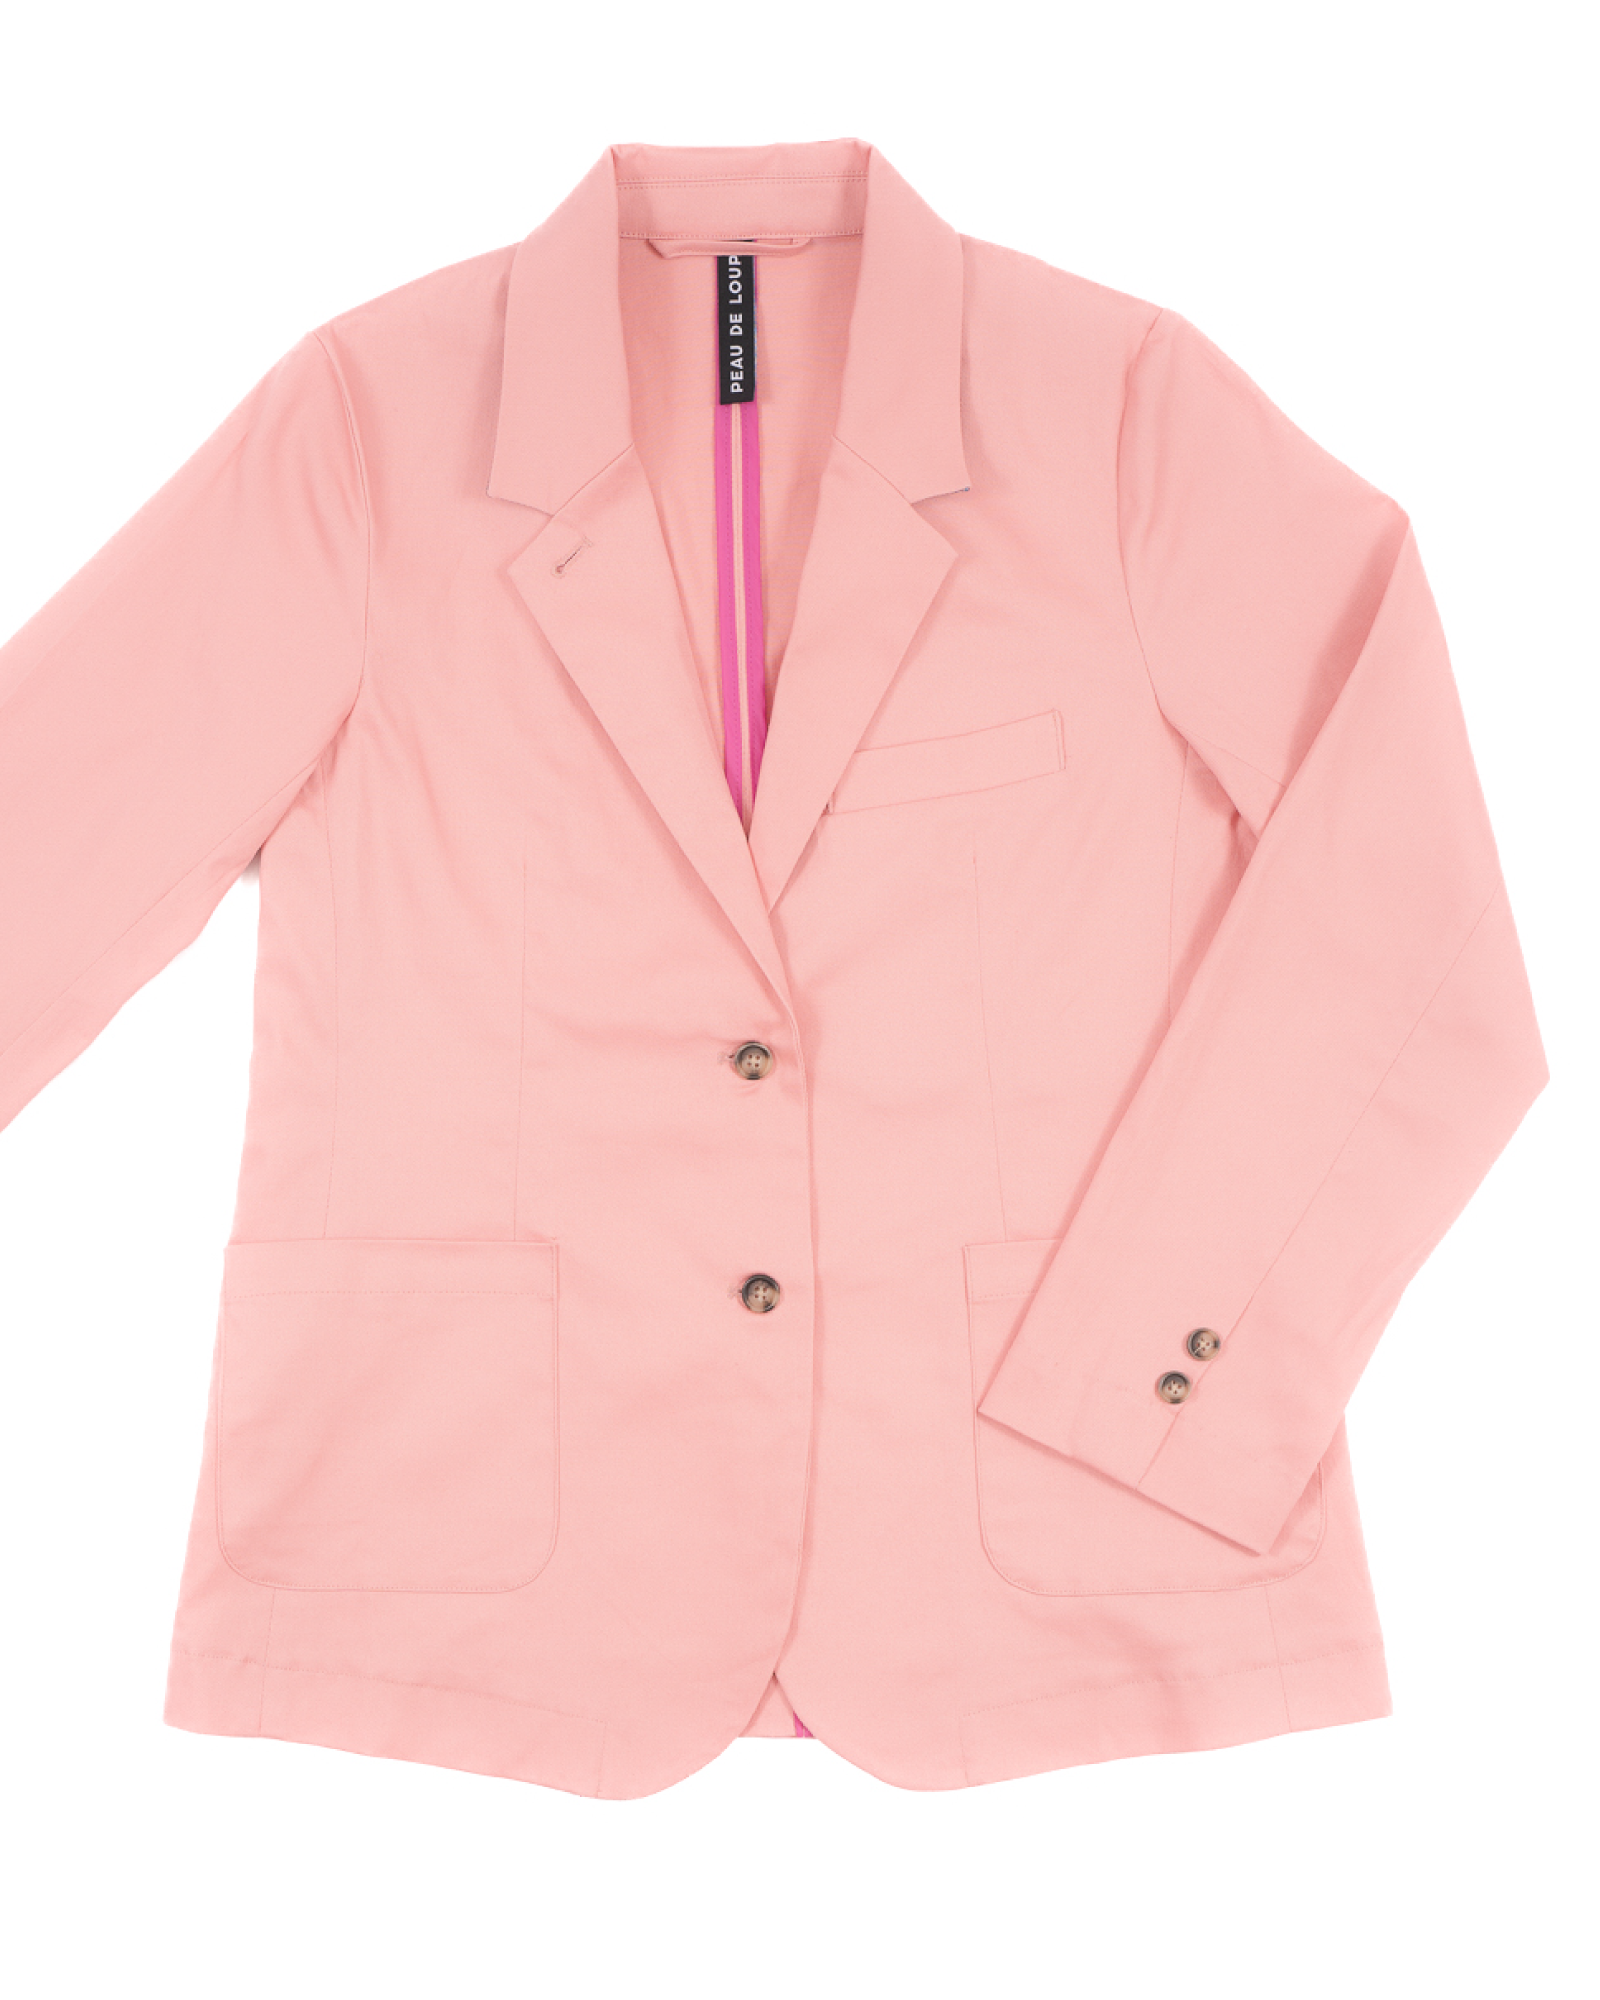 Powder Pink Jacket